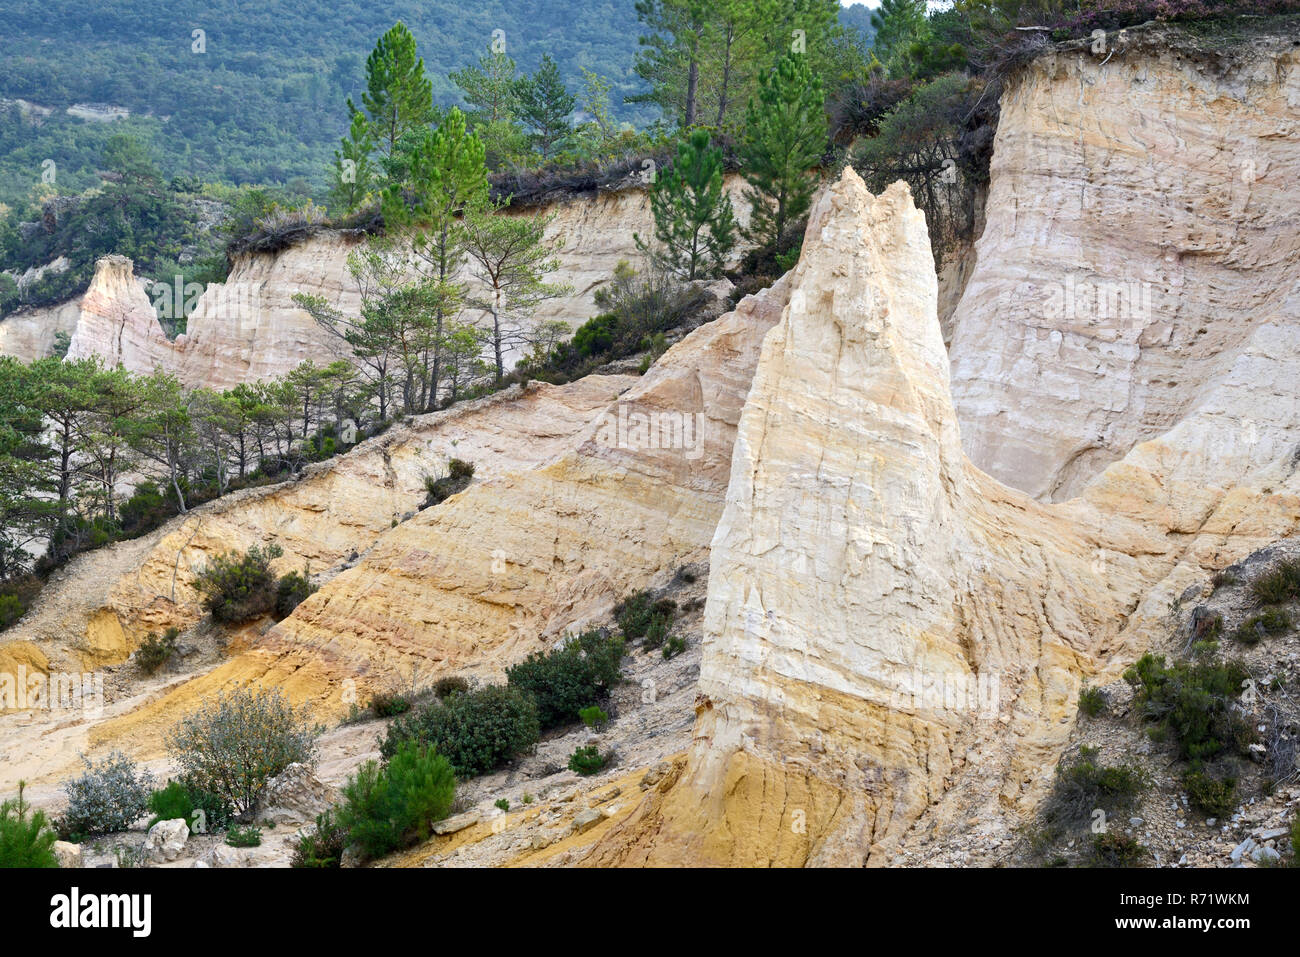 Landschaft von hellem Ocker oder Ocker Aufschlüsse in einem Gebiet wie Colorado bekannt en Provence bei Rustrel im Regionalpark Luberon Provence Frankreich Stockfoto